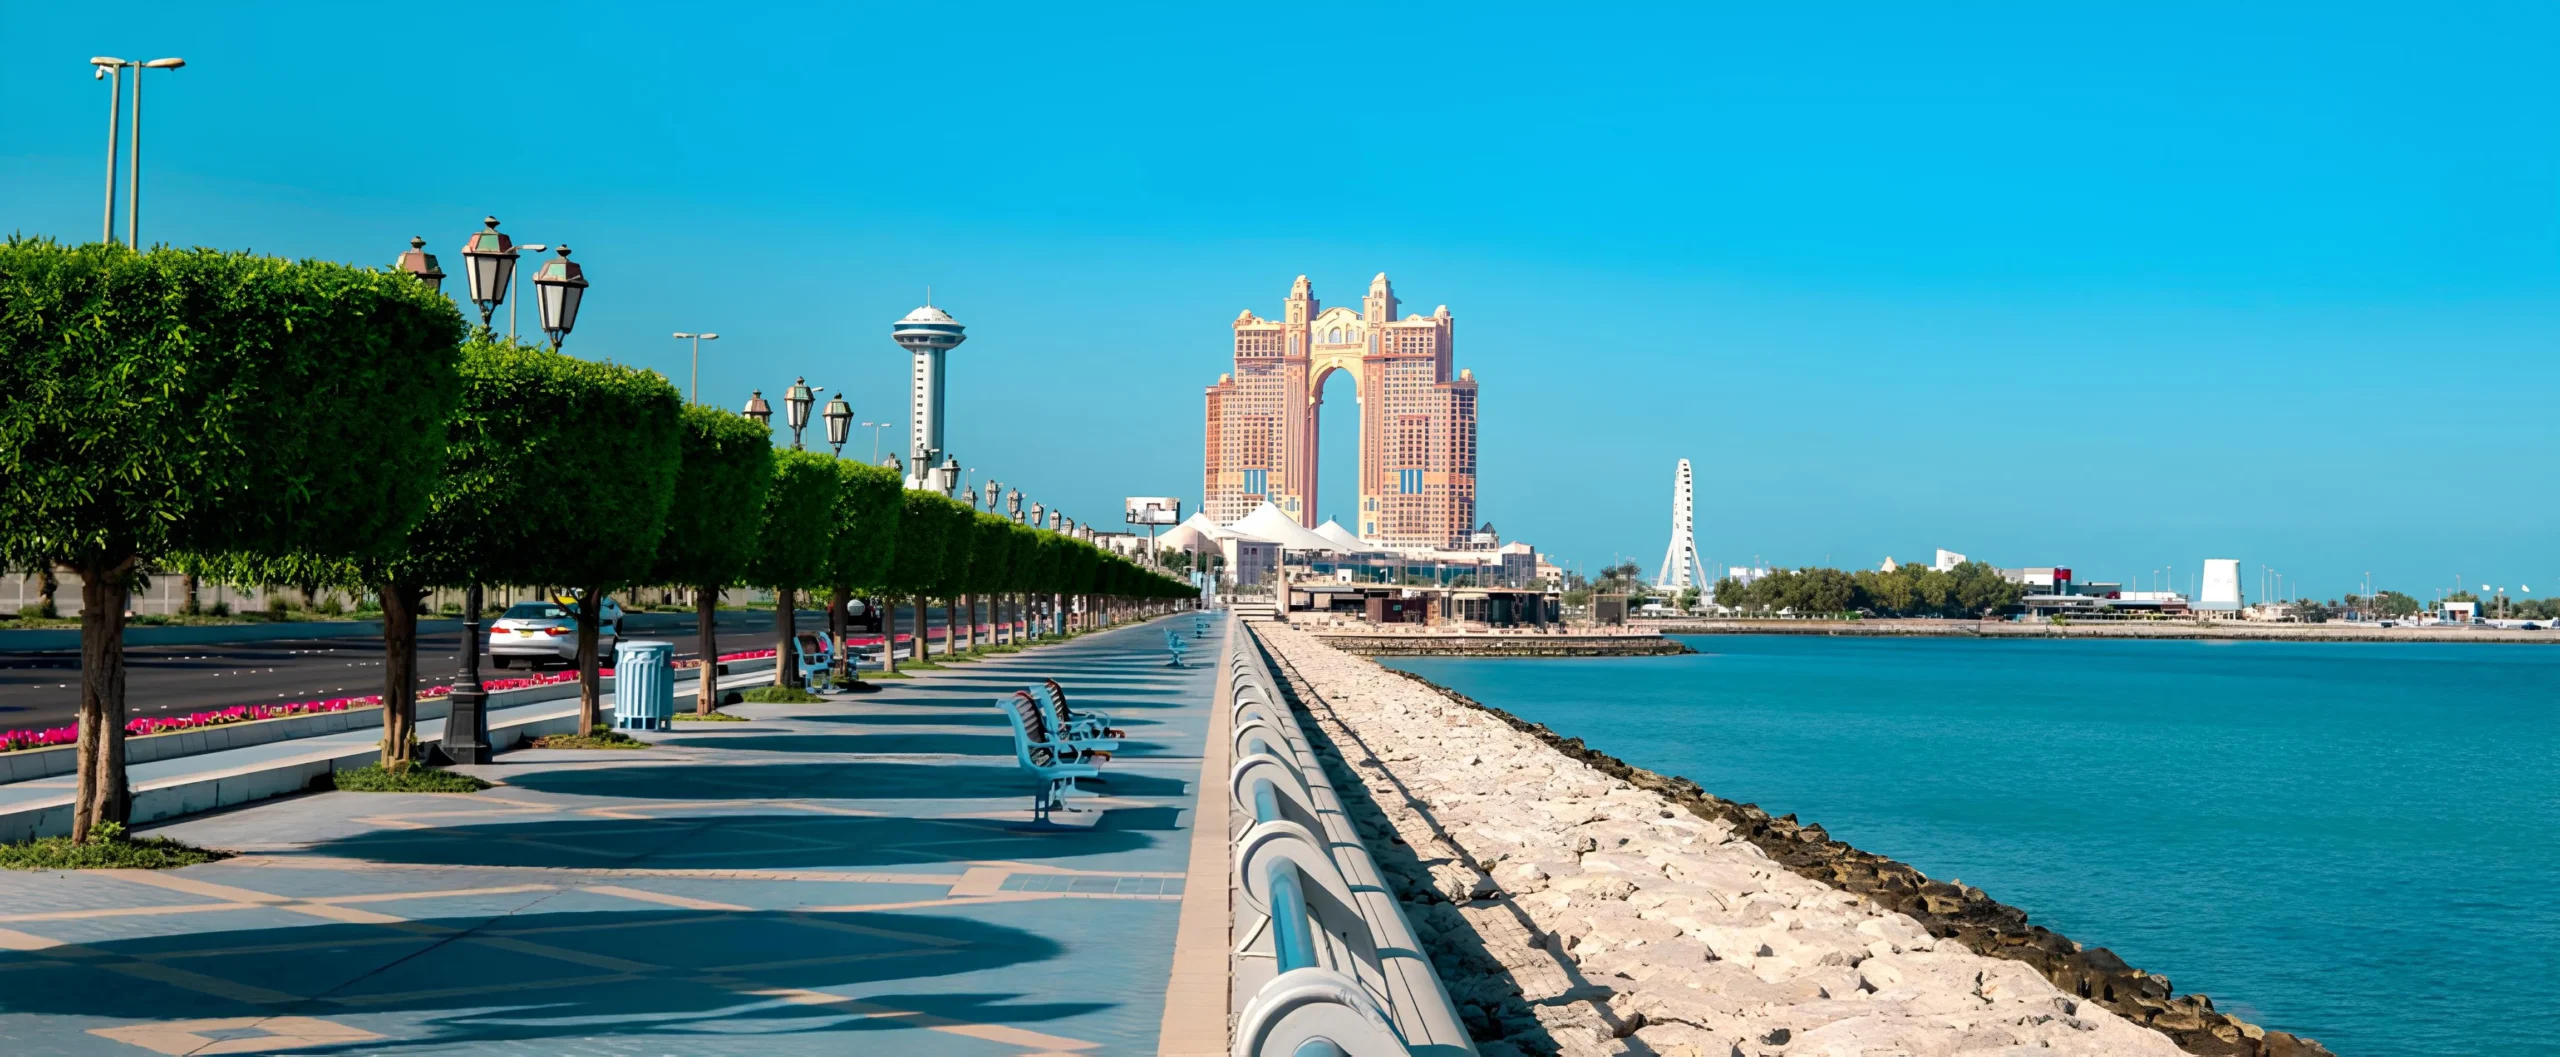 Destinations in Abu Dhabi (3)